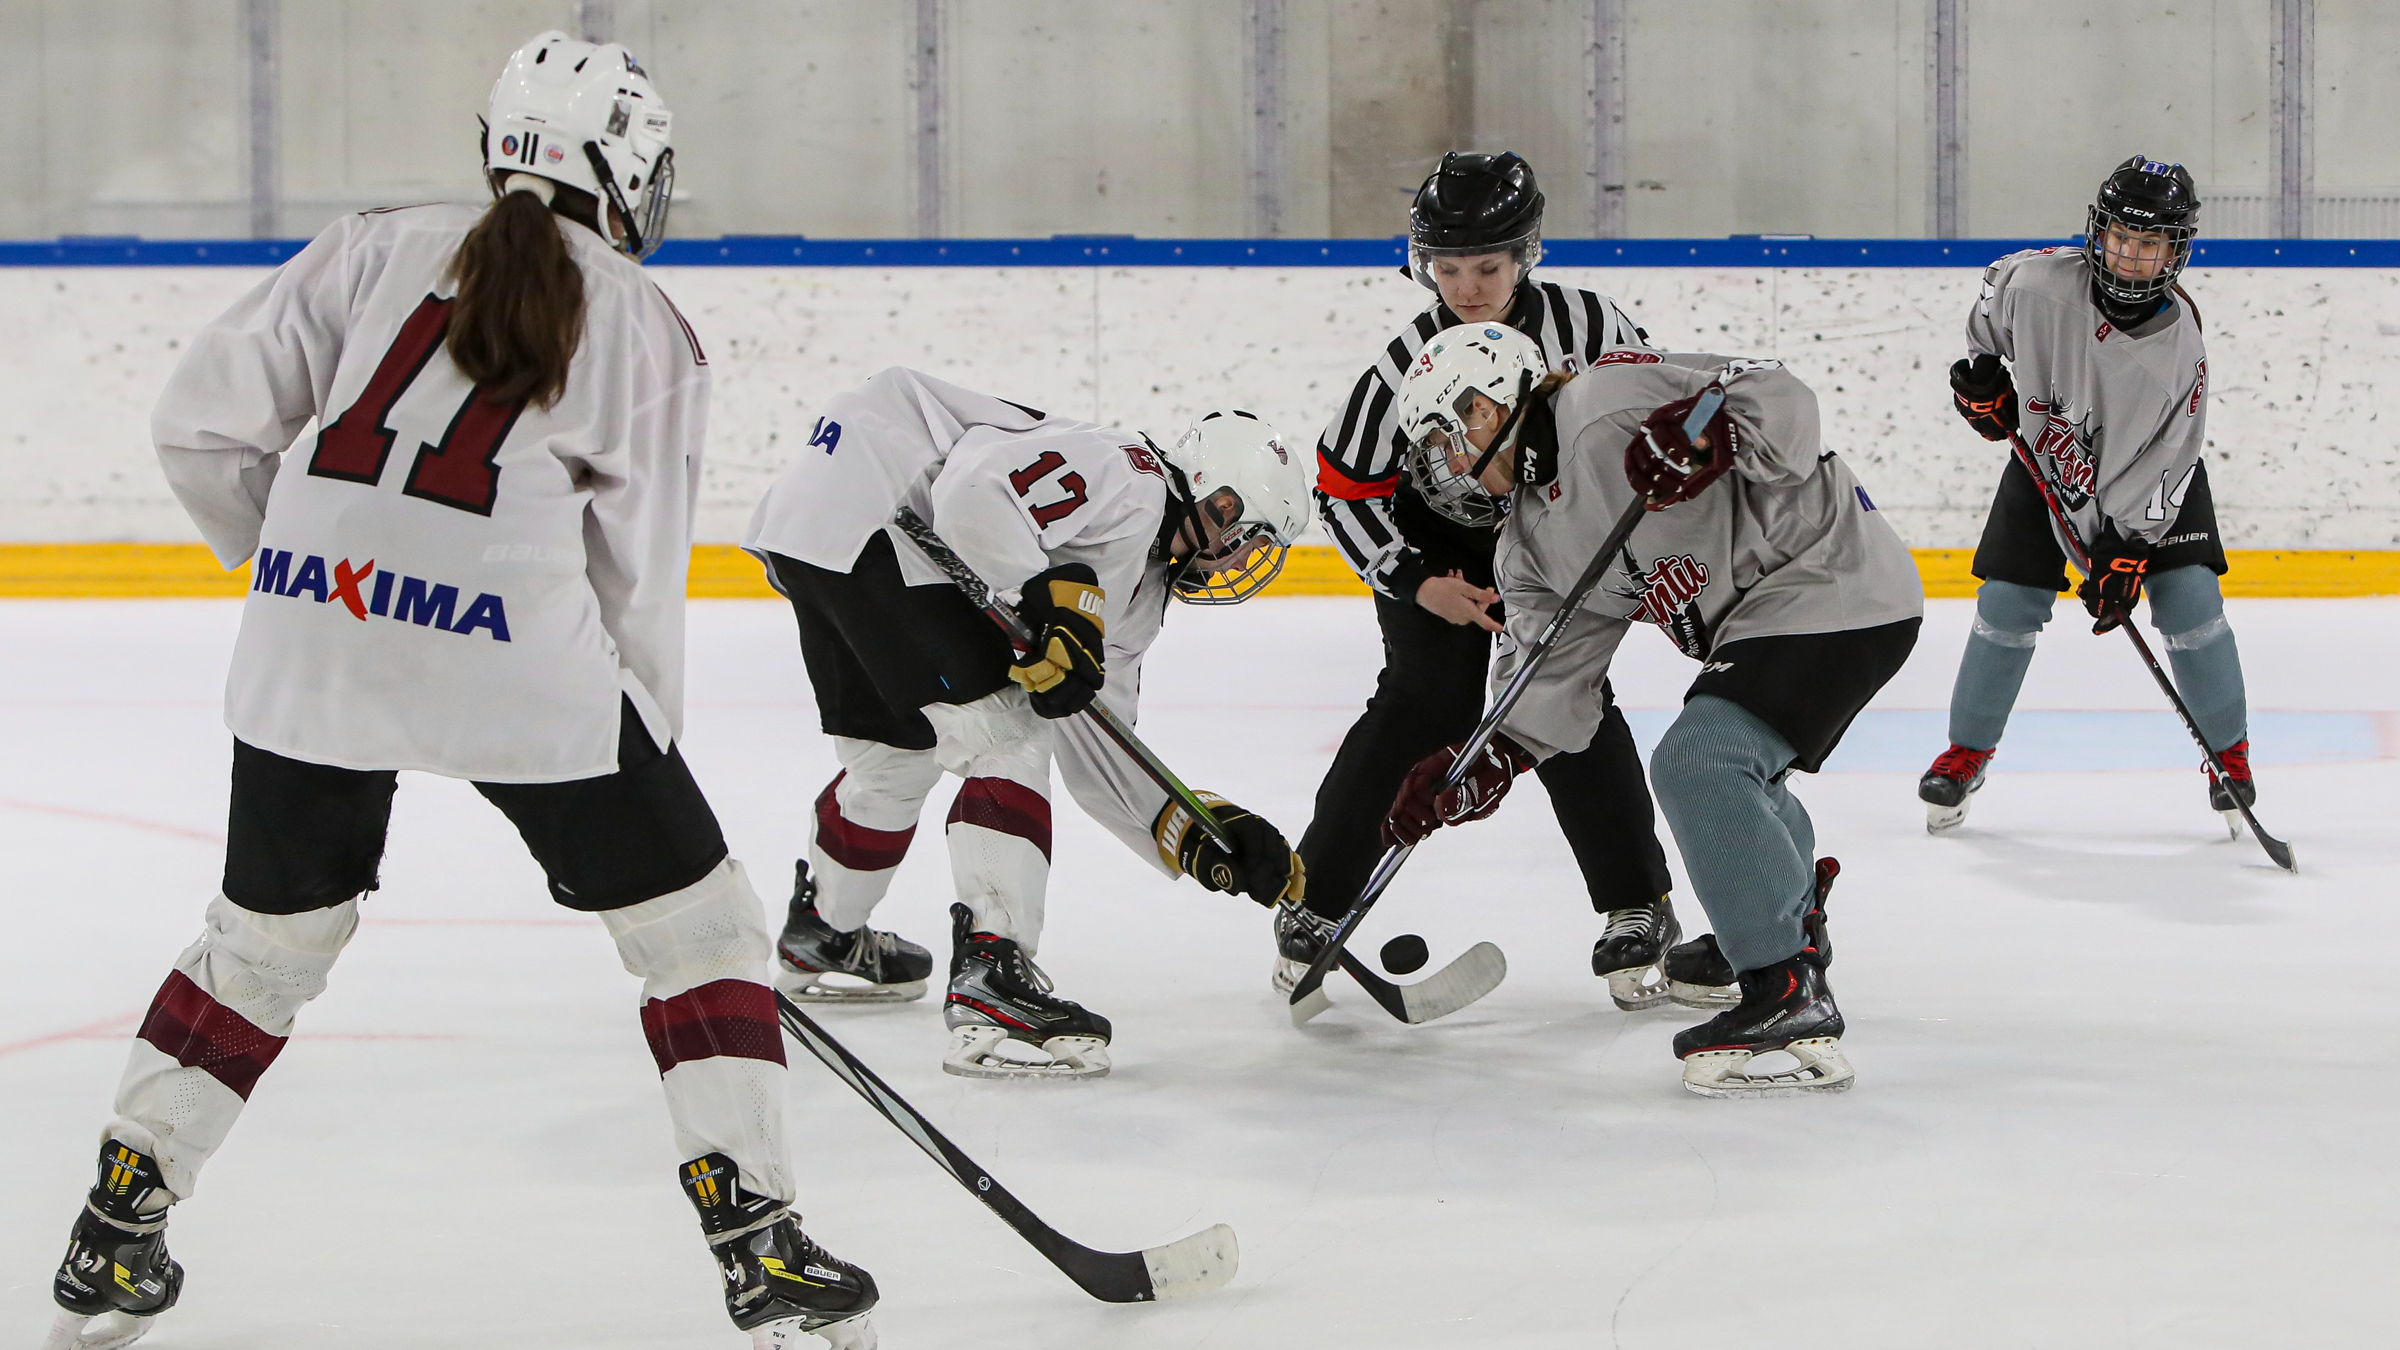 Rīgā norisinājās Baltijas U14 meiteņu 3x3 hokeja turnīrs